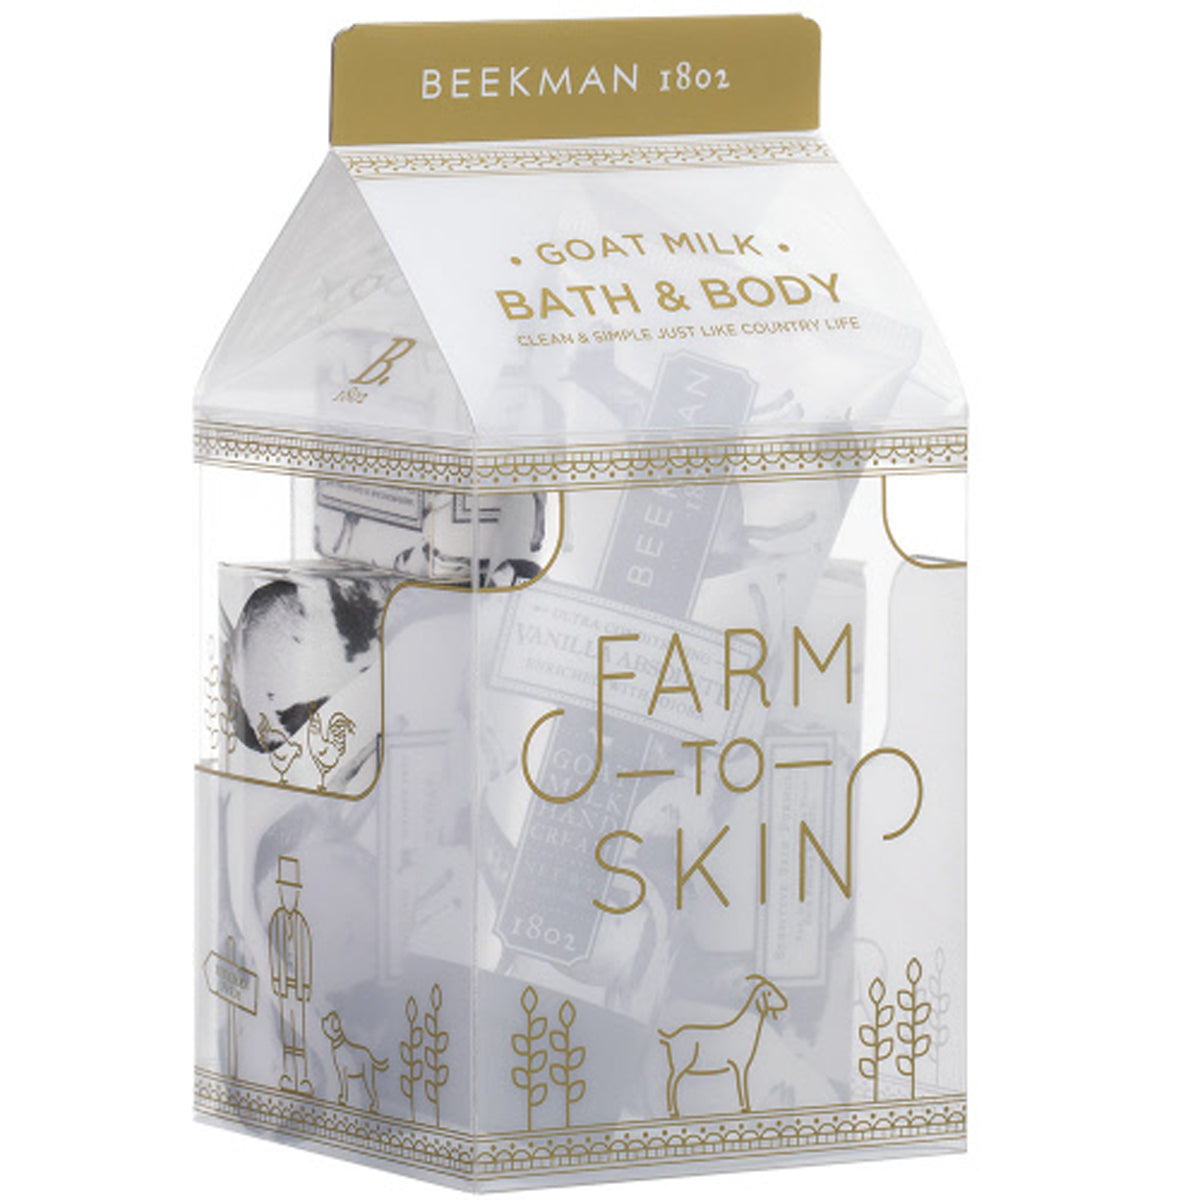 Goat Milk Bath & Body Farm to Skin